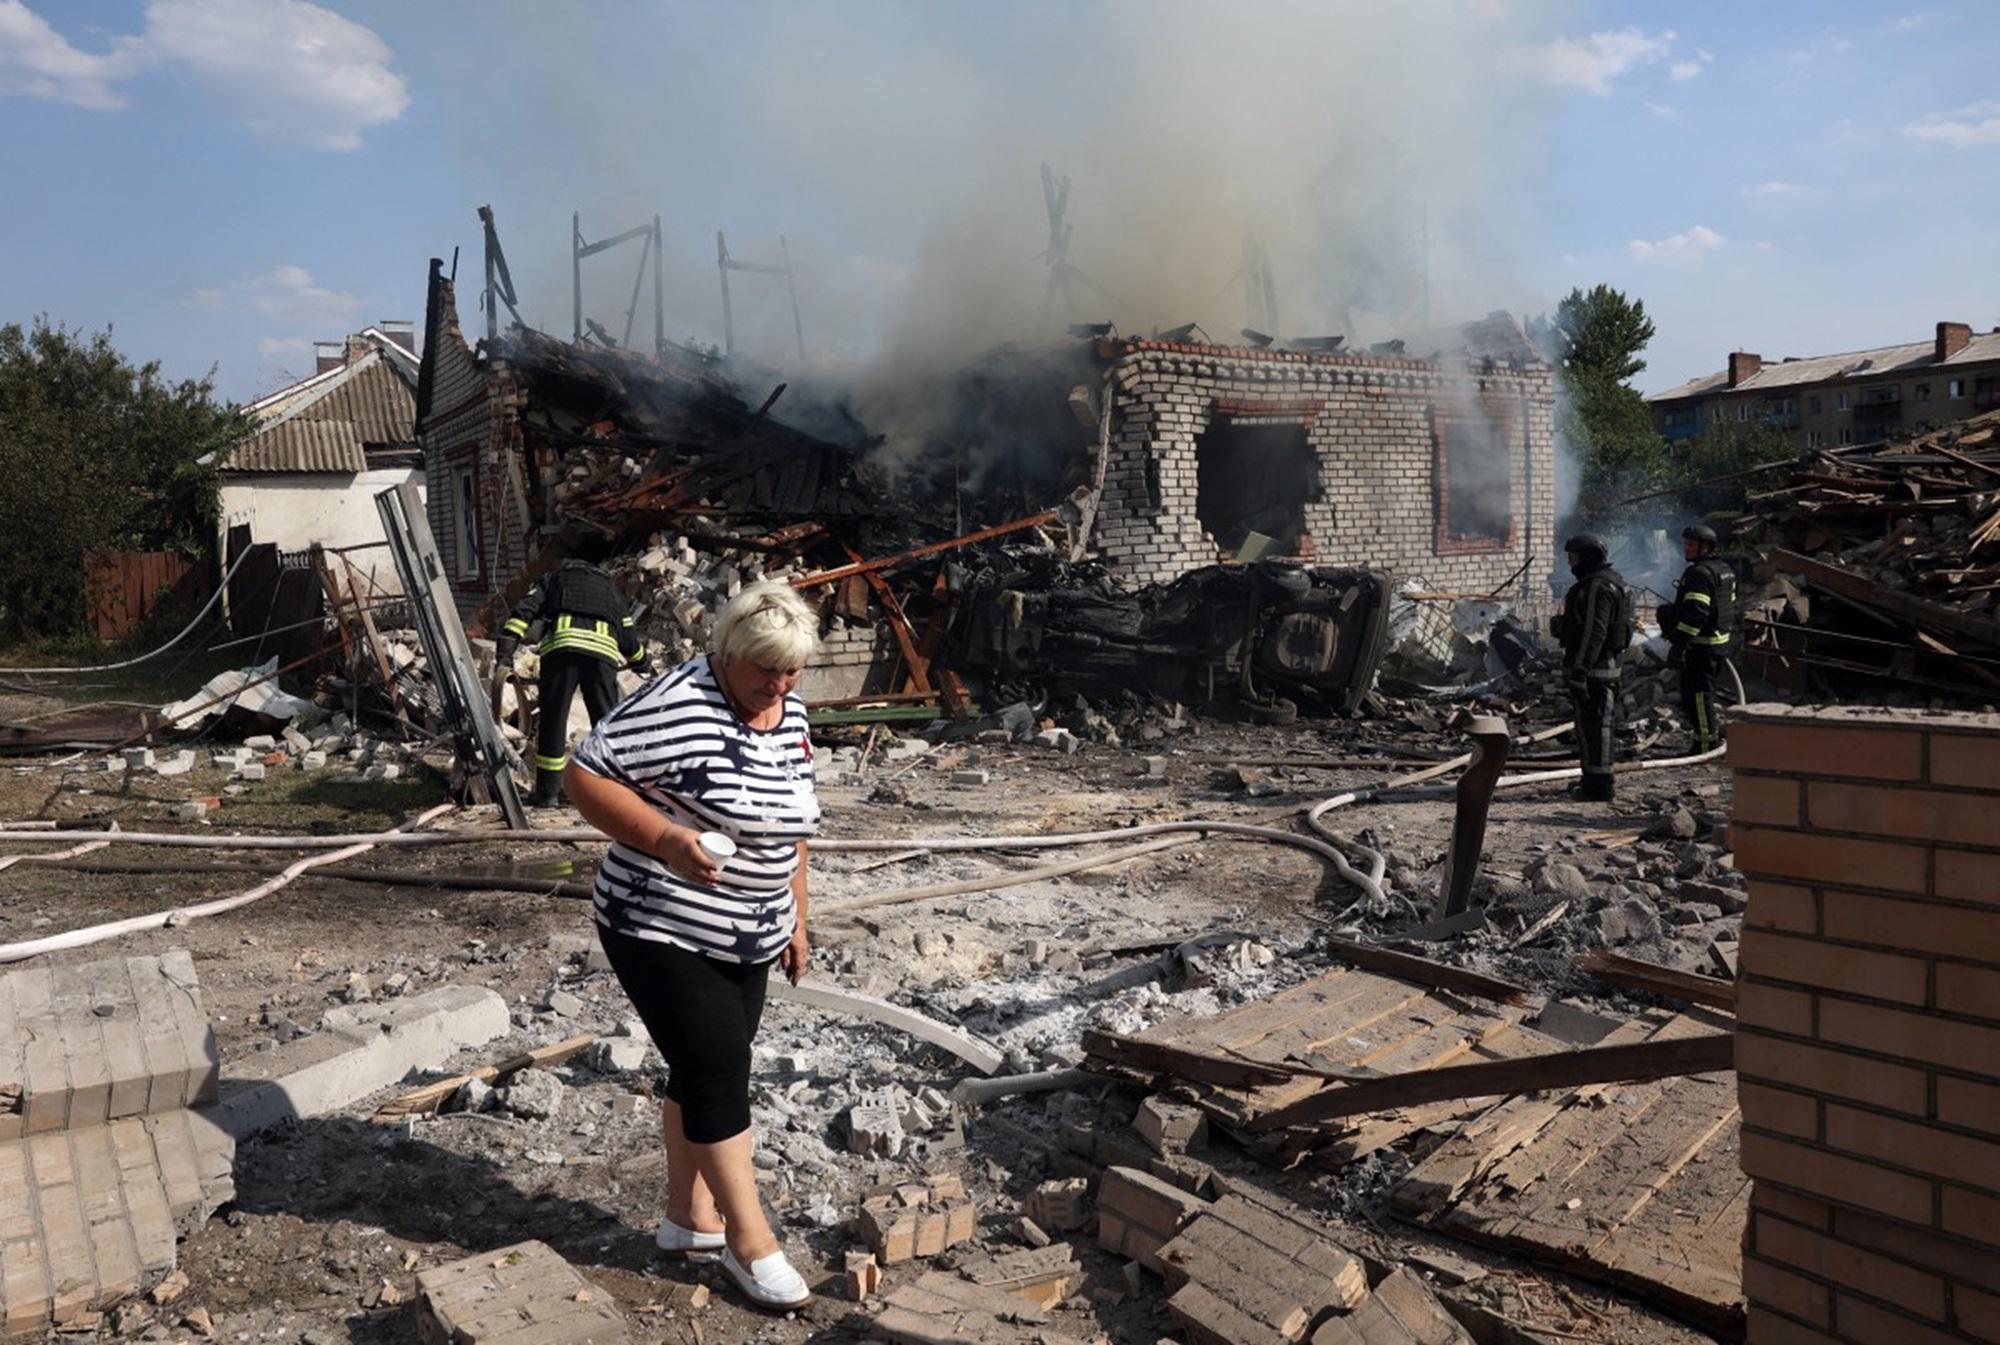 Ucraina - Russia attacca ancora: almeno 3 morti - Colpiti impianti energetici